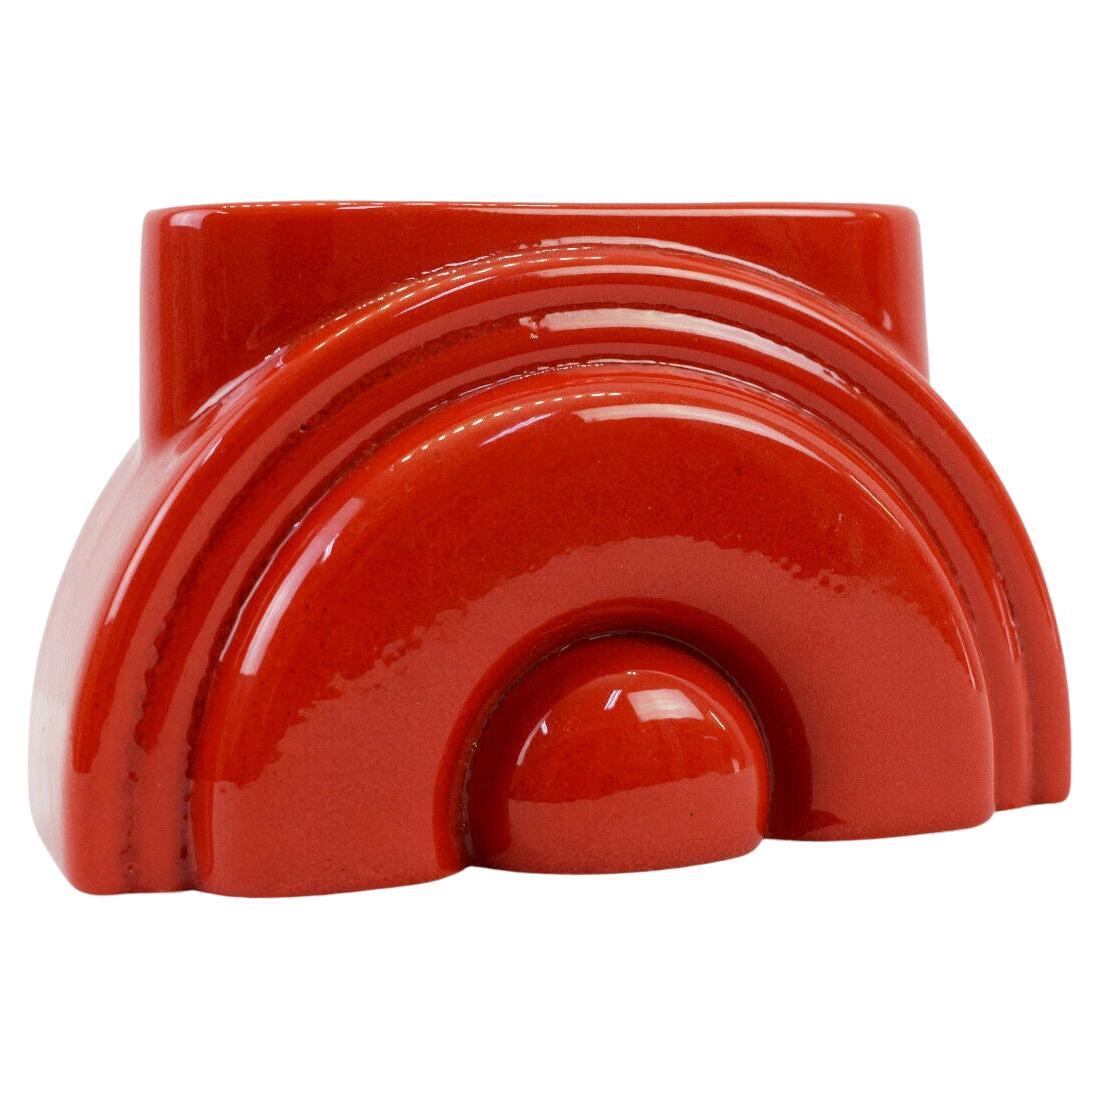 Pierre Cardin moderne rote Porzellanvase Franco Pozzi Ceramica, 1970er Jahre, Italien. Wunderschönes modernes Stück. Ein roter Regenbogen oder eine aufgehende Sonne, signiert. Franco Pozzi Ceramica für Pierre Cardin, um 1970.